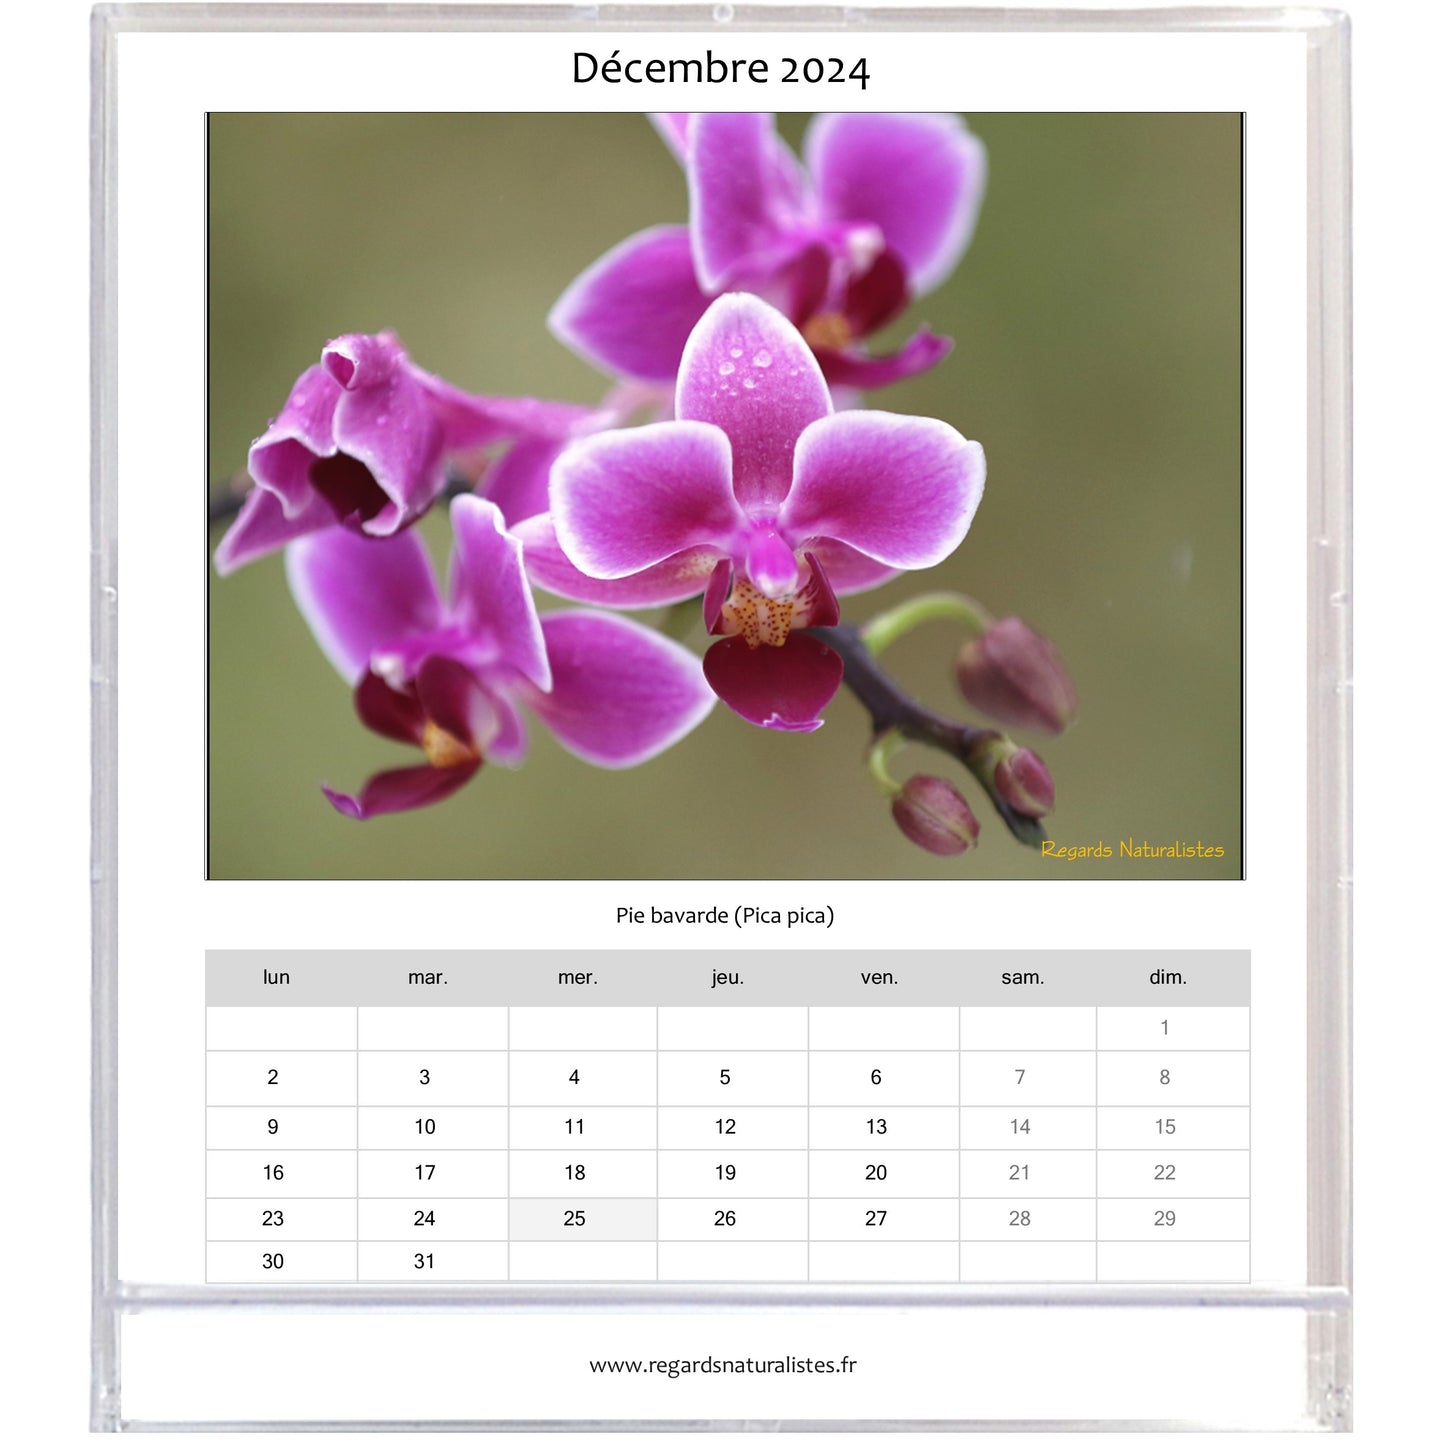 Calendrier photo 2024 les orchidées chevalet bureau 12 mois